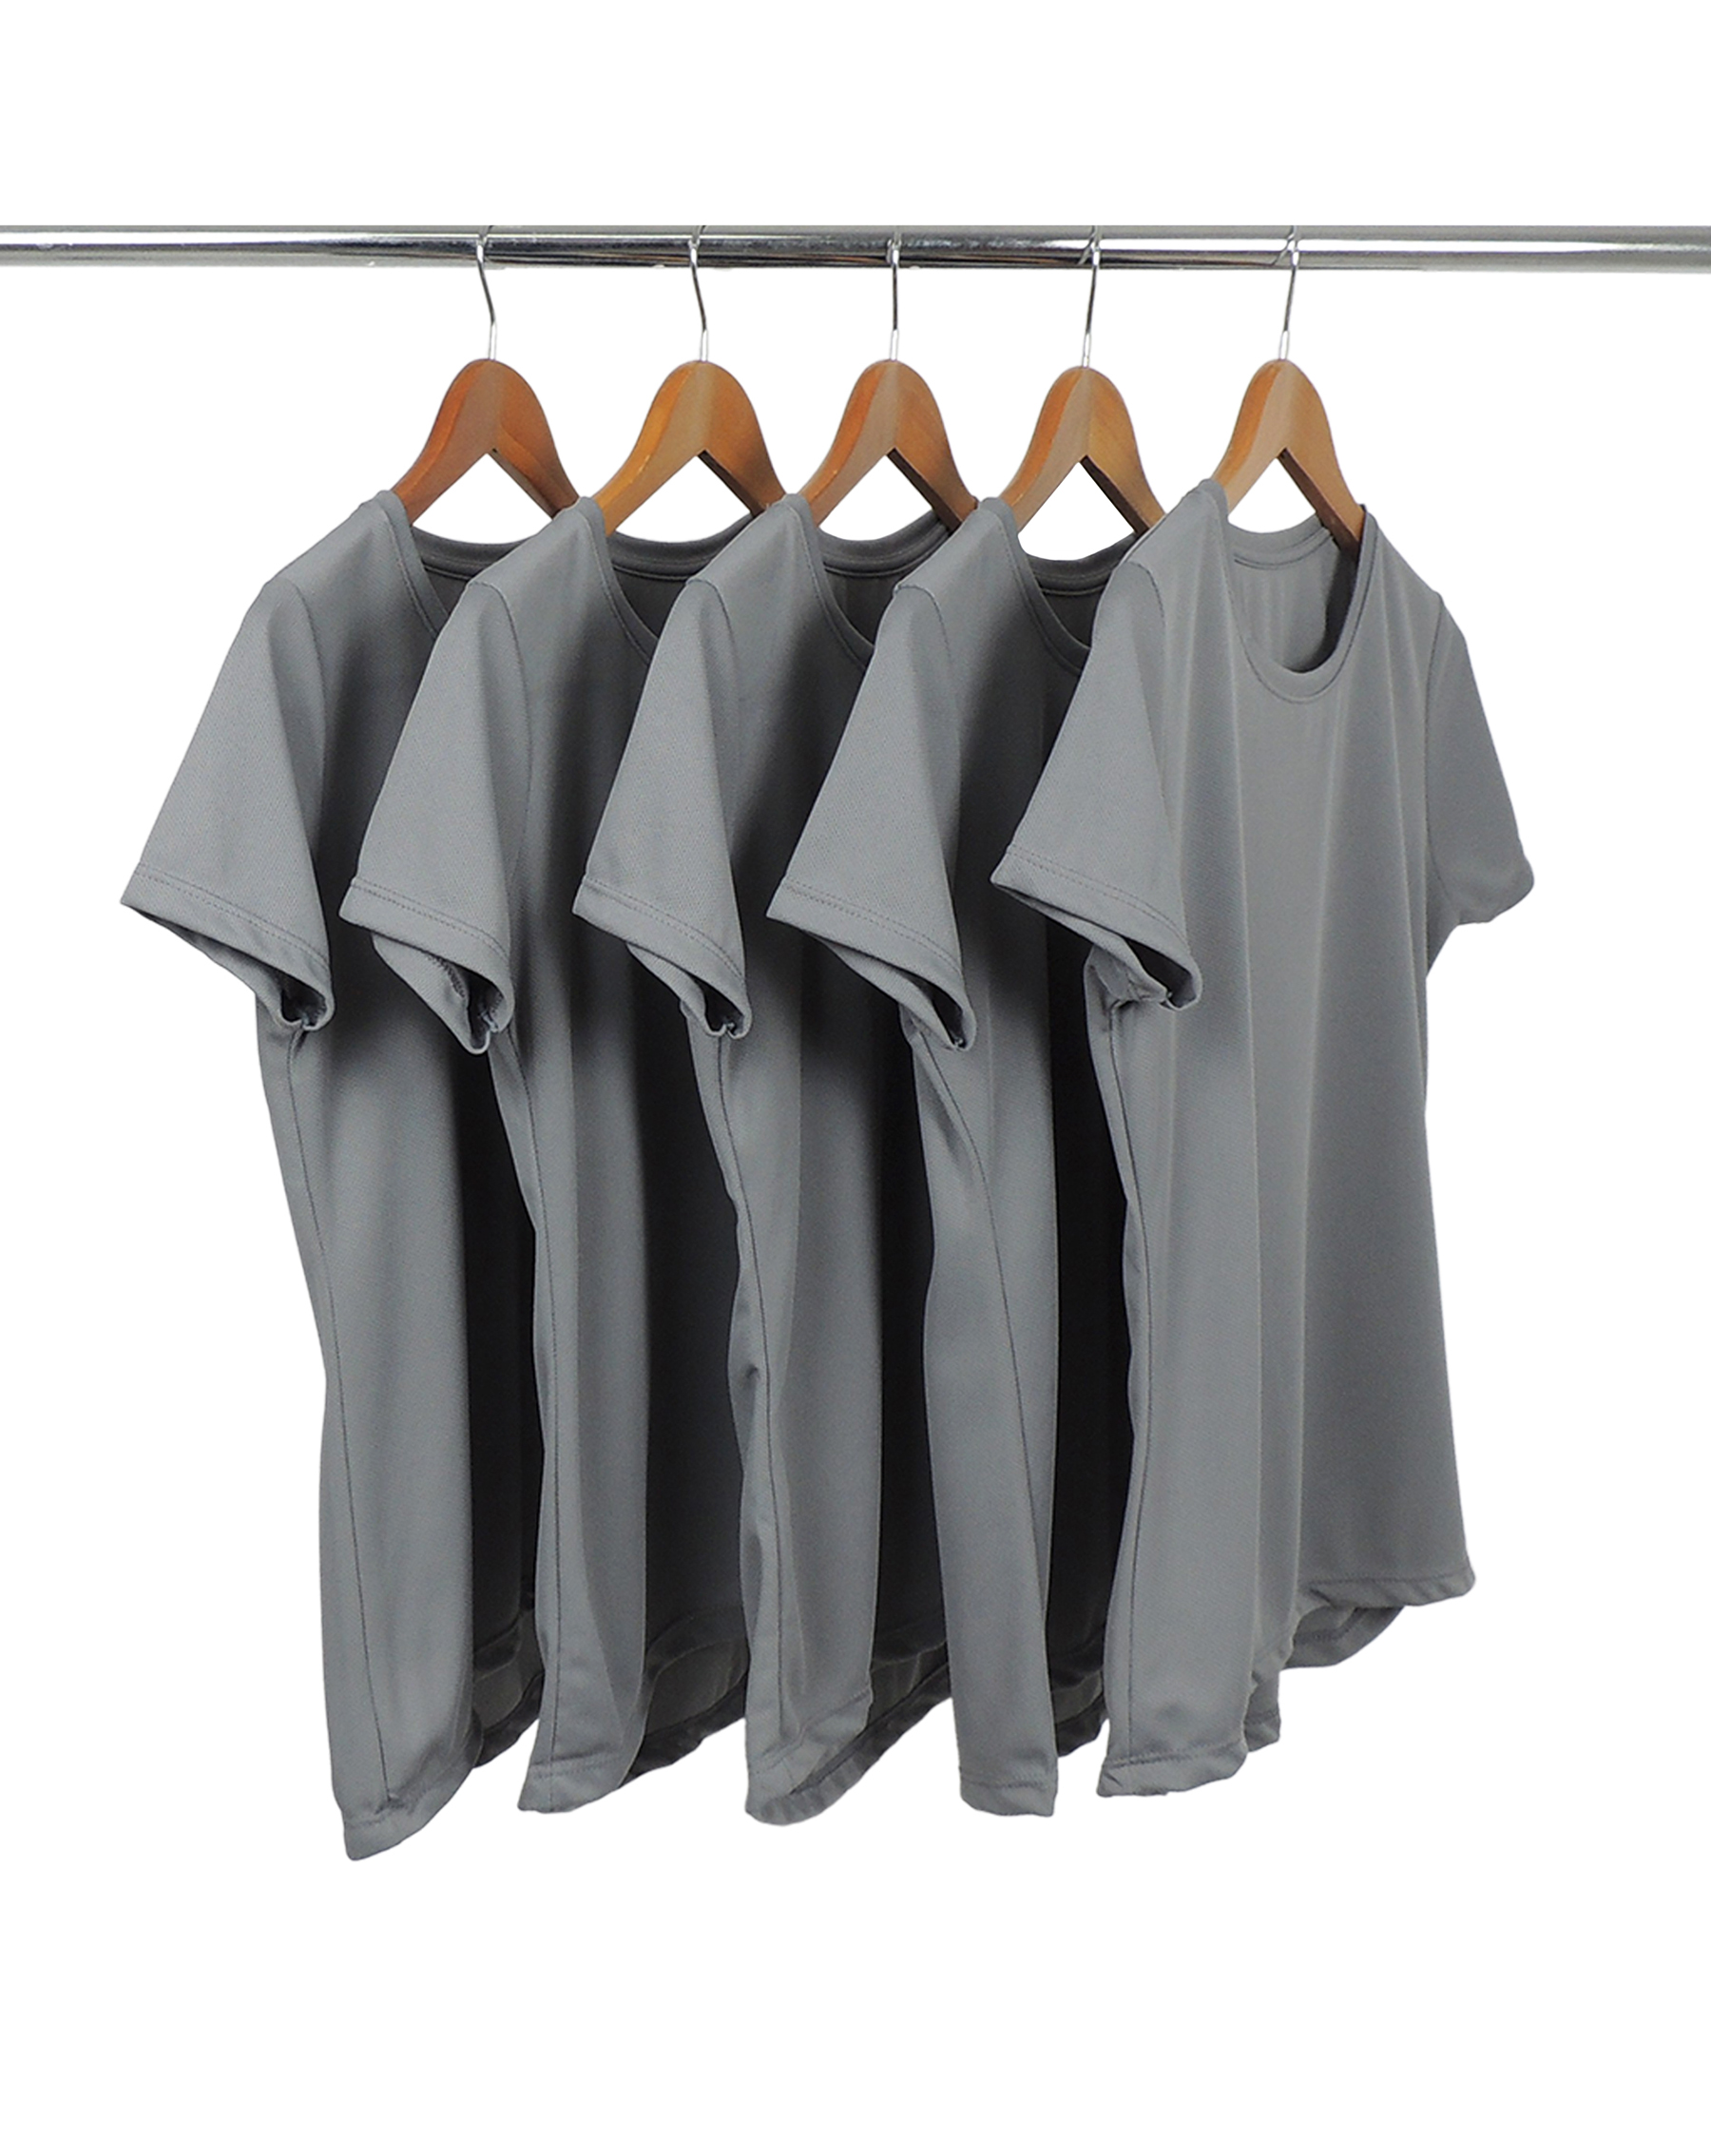 KIT 5 Camisetas Femininas Dry Fit Cinza Chumbo Proteção UV 30+